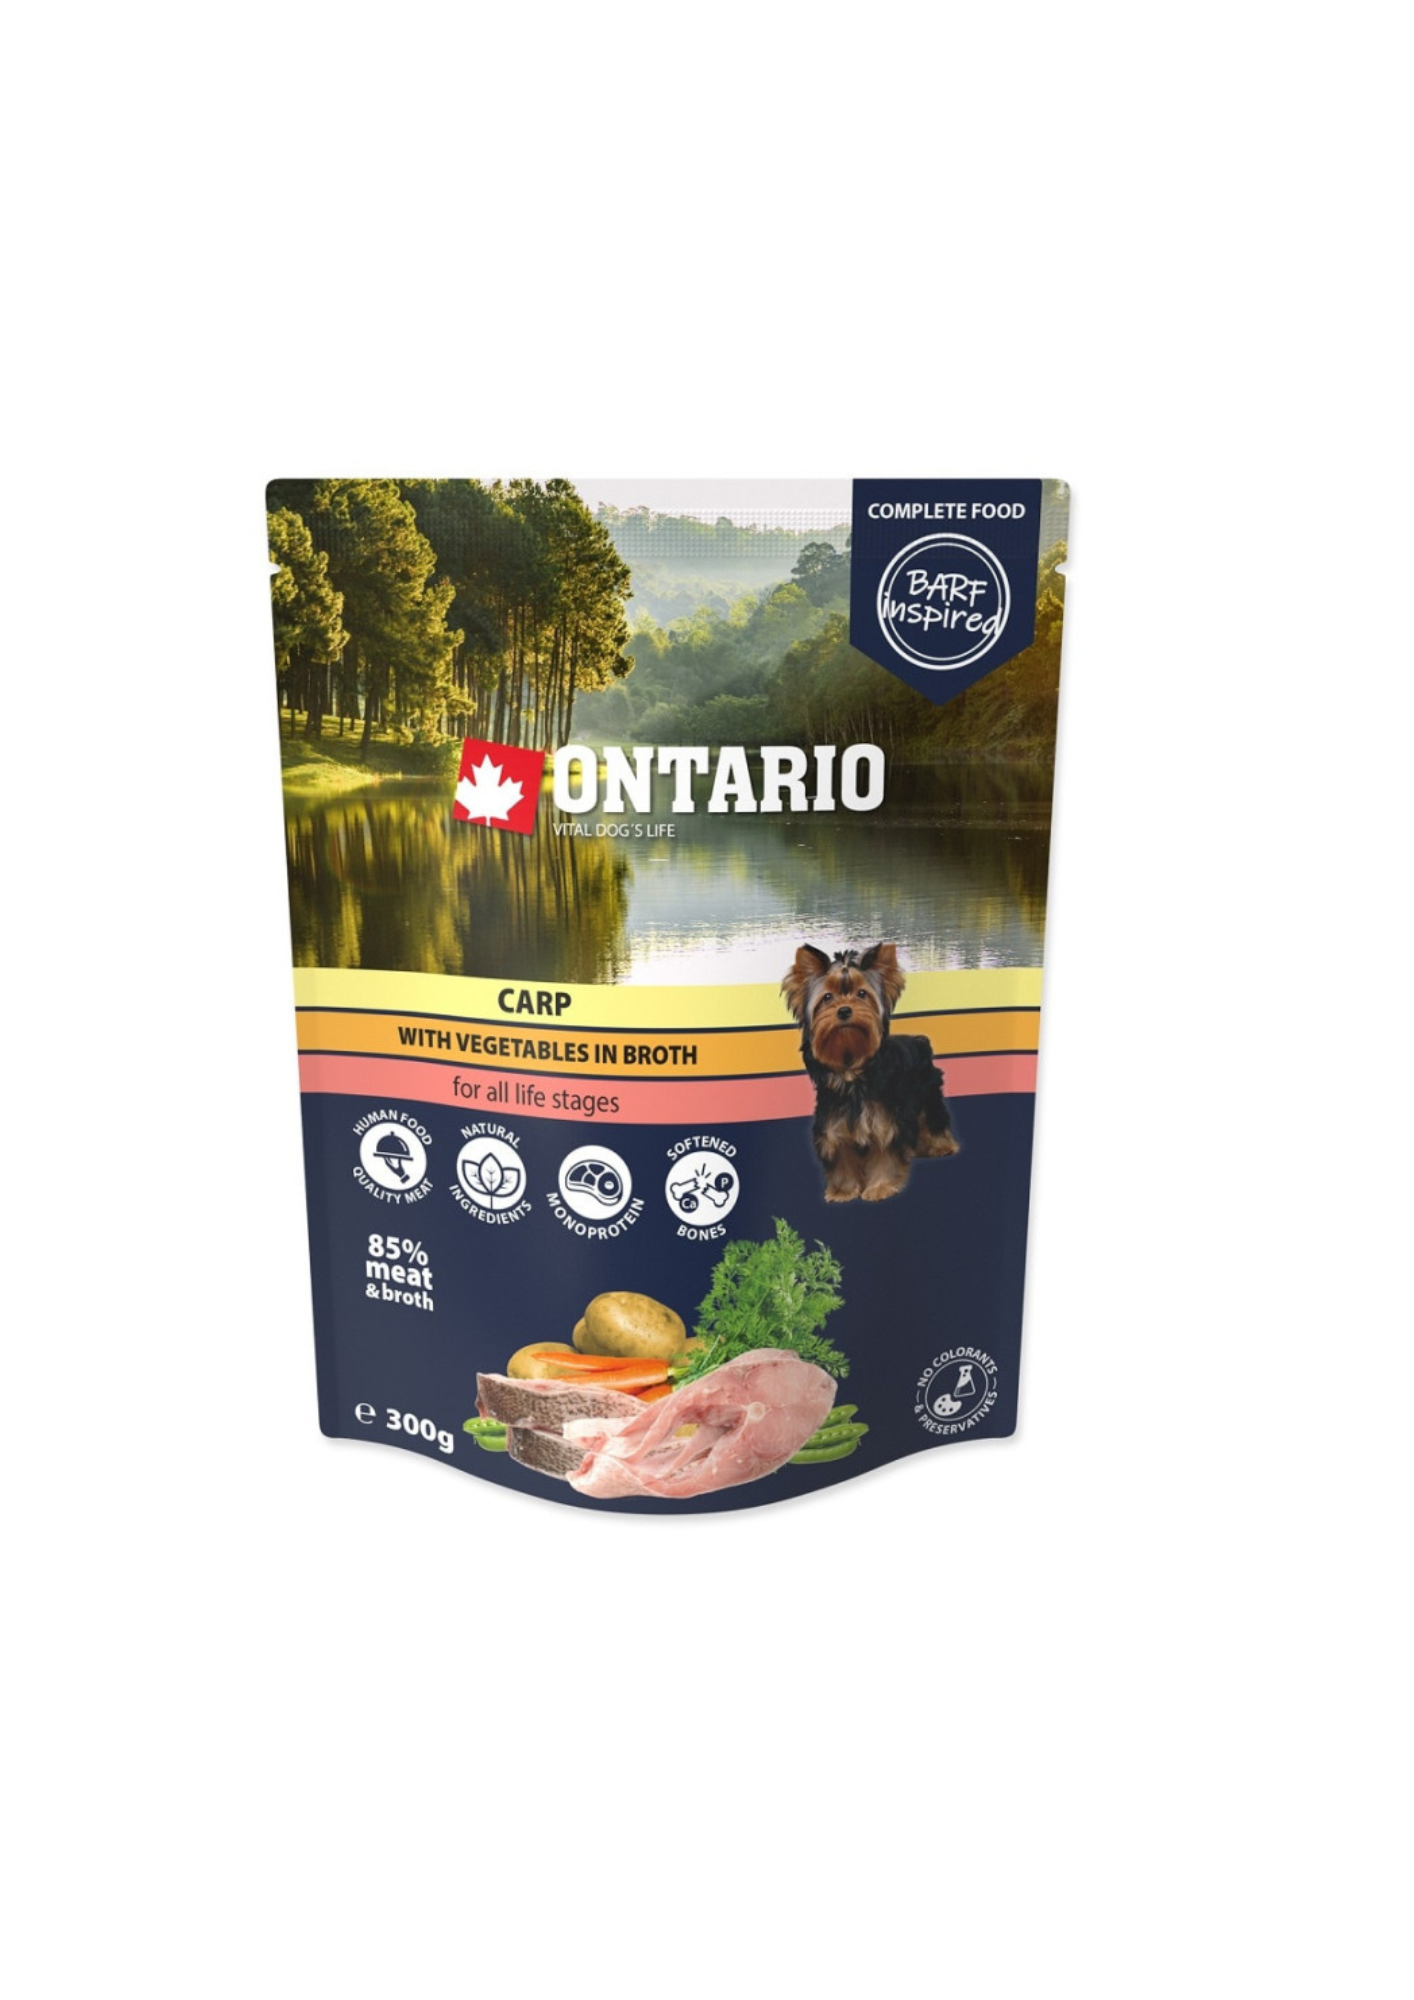 Ontario mitrā barība suņiem ar karpu, dārzeņiem buljonā, 300 g